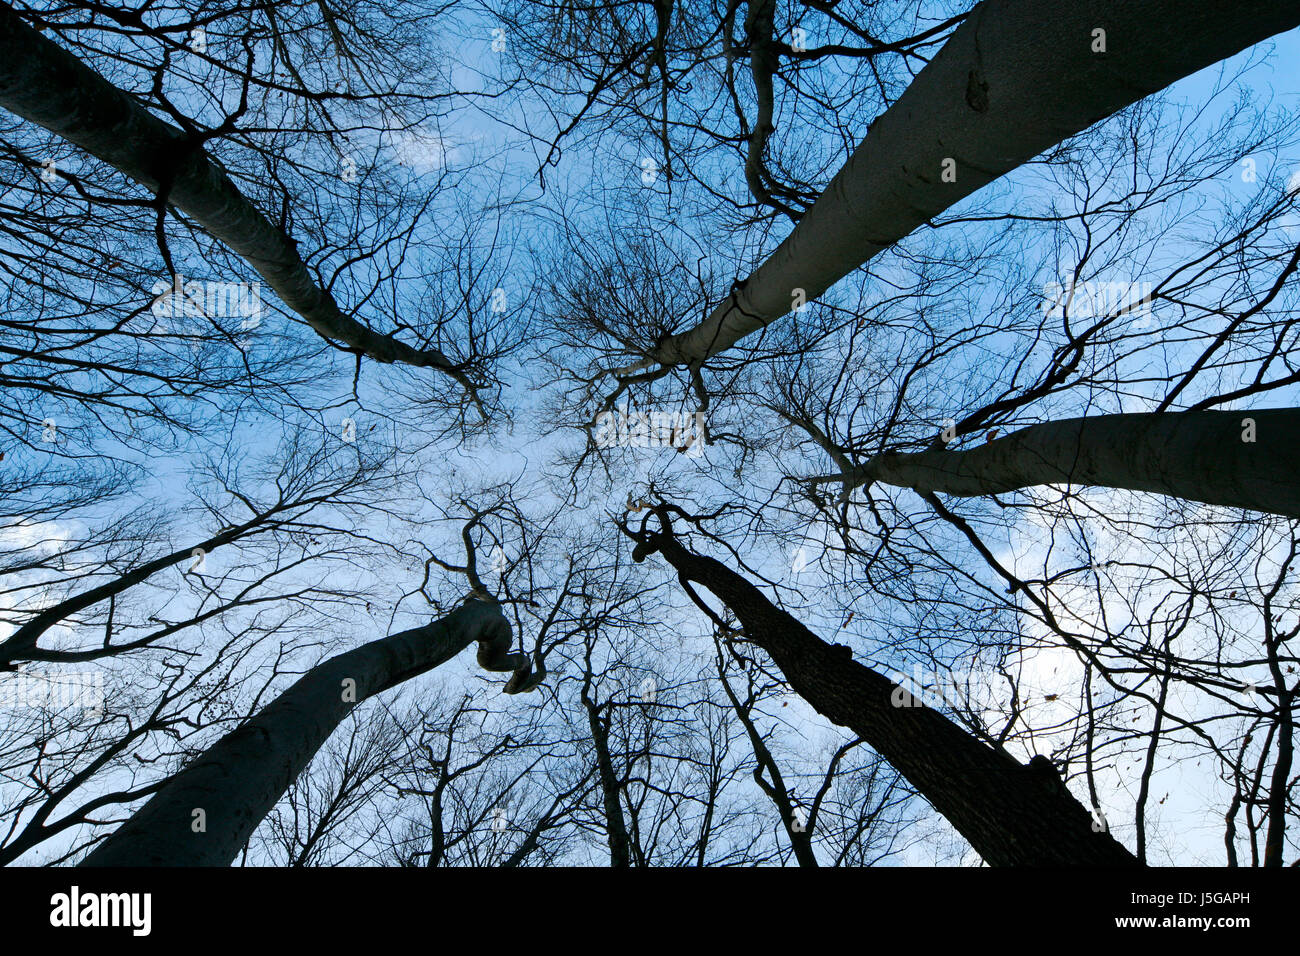 Verso l'alto gli alberi ad albero tronco ampio angolo di prospettiva prospettiva aspire lungimiranza Foto Stock